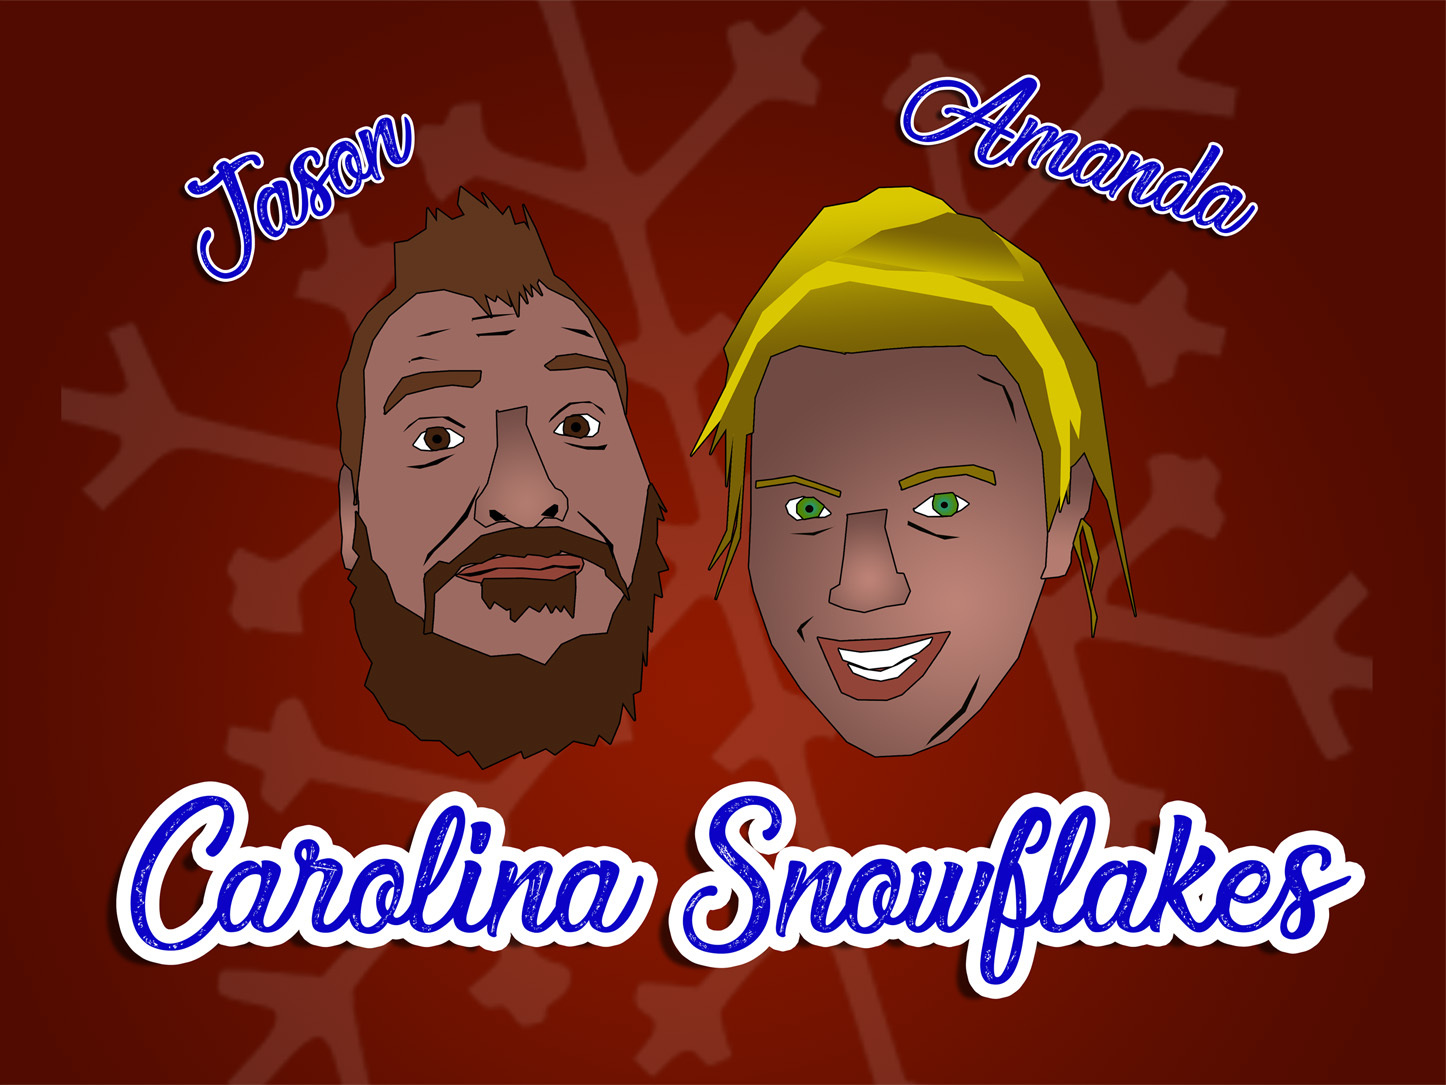 Carolina Snowflakes Podcast